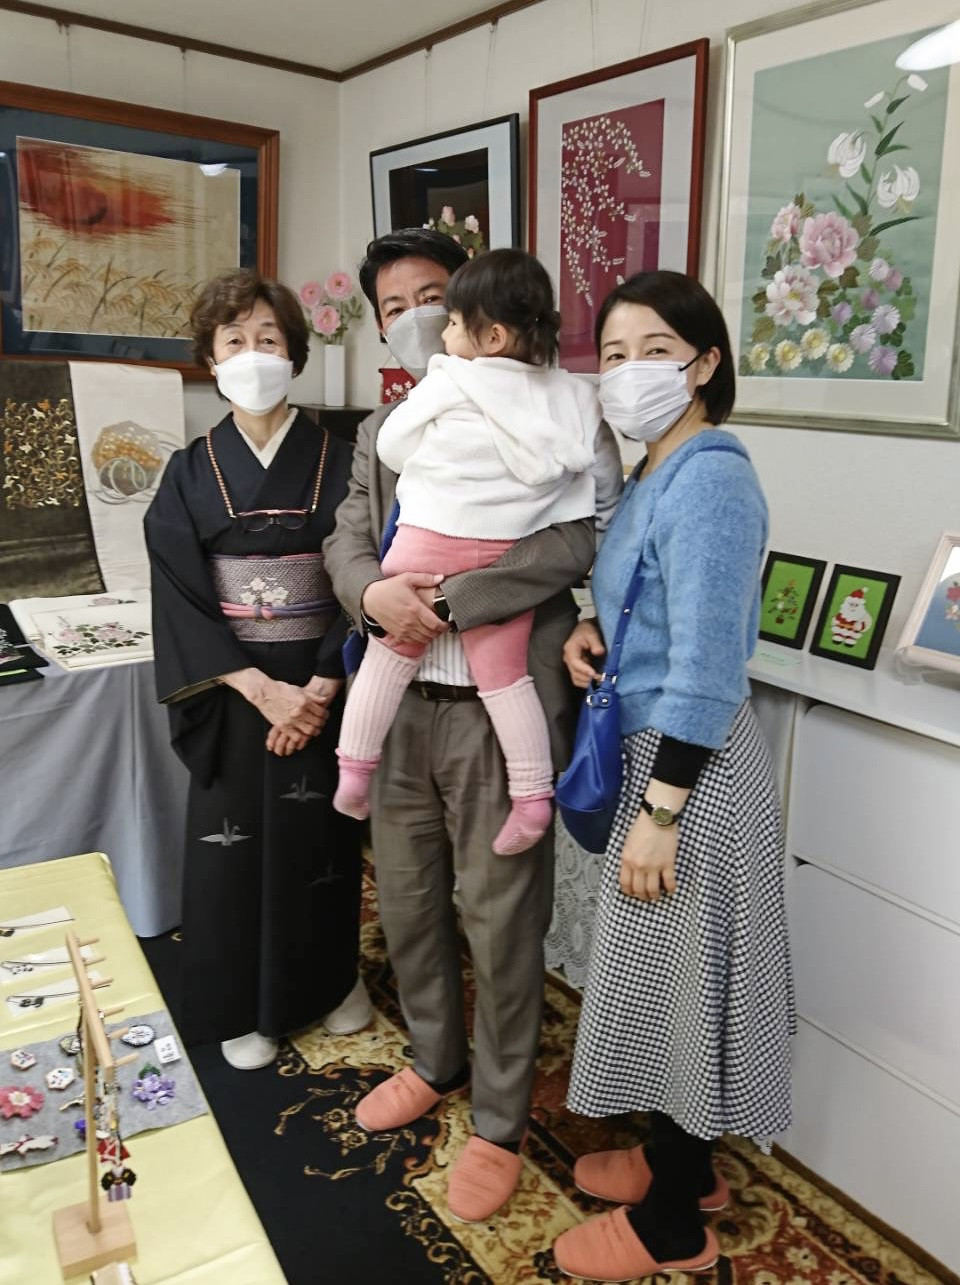 #町田市議会議員 の #ふじた学 です。  　尾根緑道さくら祭り🌸から 寄り道して、素敵なオープンギャラリー     日本刺繍工房おかじま さんに、家族て伺い、鑑賞してきました。 　岡島先生ご夫妻には